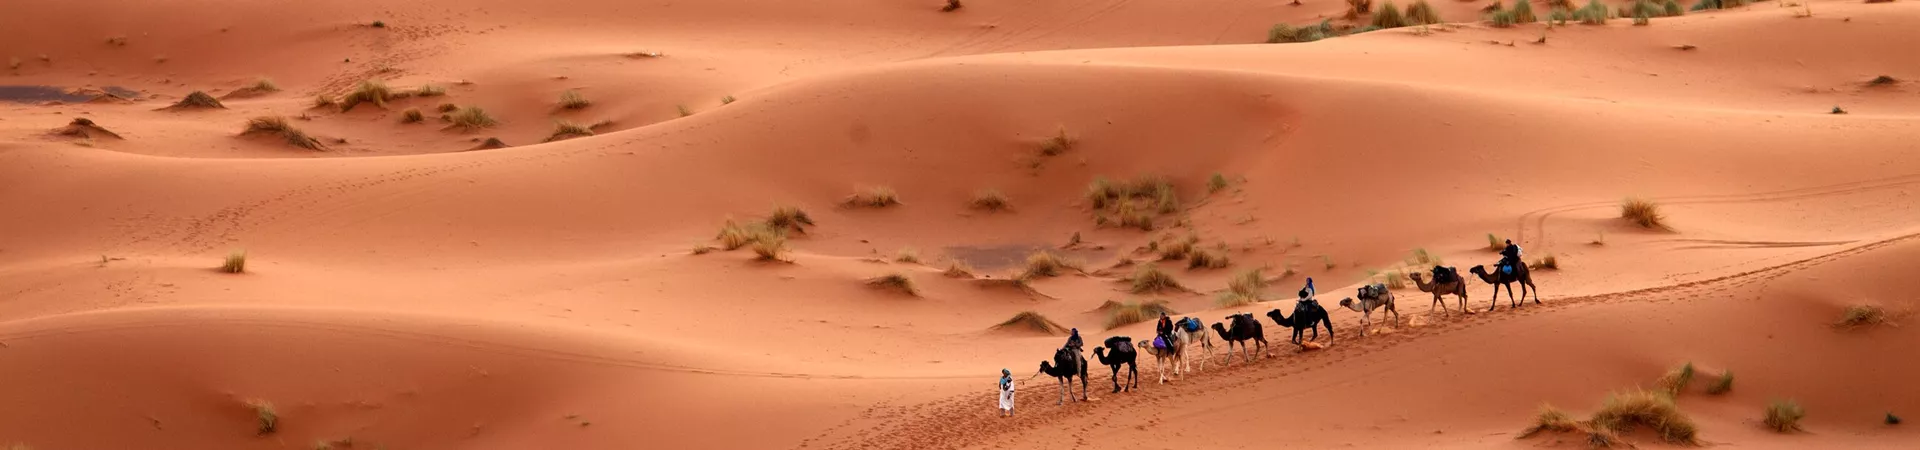 Camel ride caravan in the Sahara Desert in Morocco